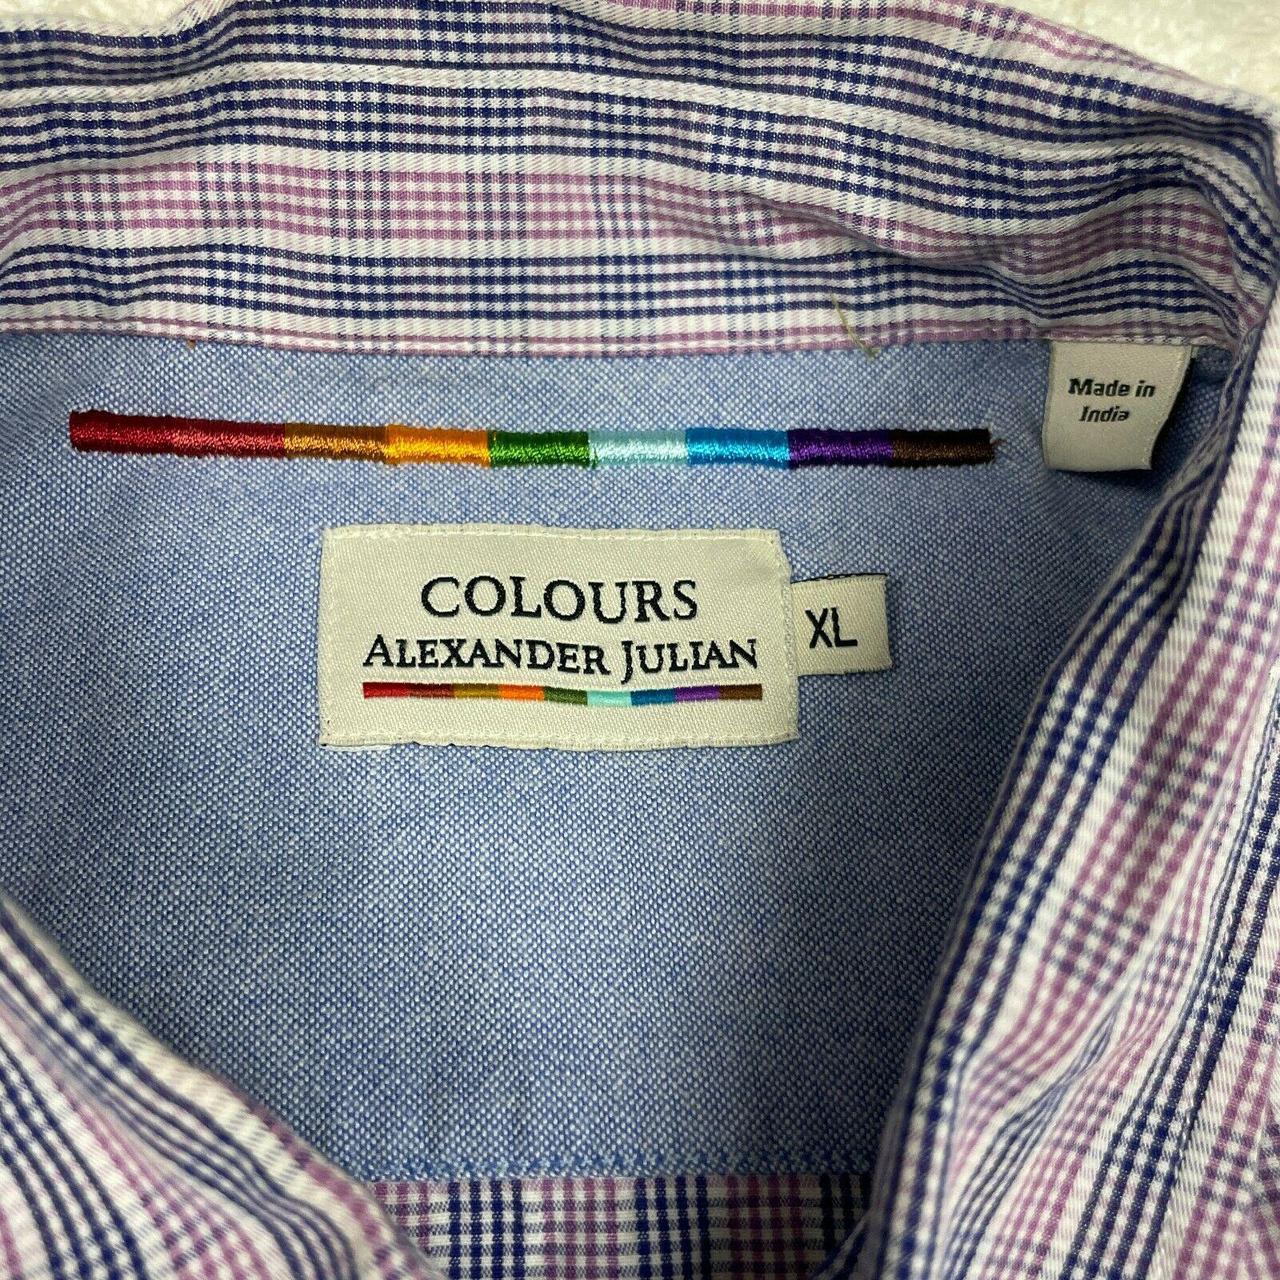 Colours Alexander Julian Shirt Mens Large XL Button... - Depop